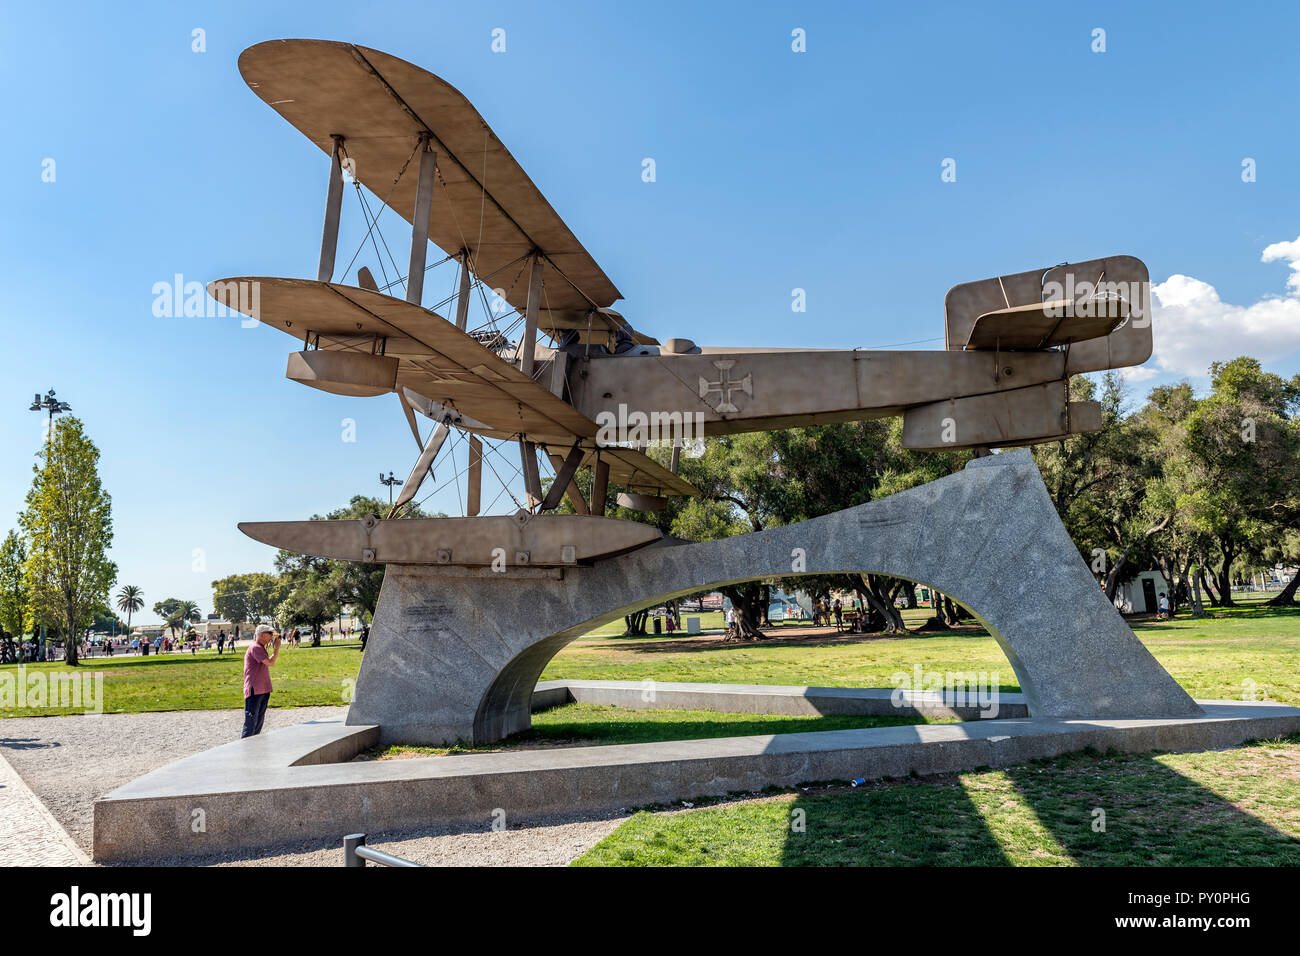 Estatuilla conmemorativa en recuerdo de la primera travesía del Atlántico Sur por Gago Coutinho y Sacadura Cabral en un Fairey III-D MkII hidroavión en 1922 Foto de stock